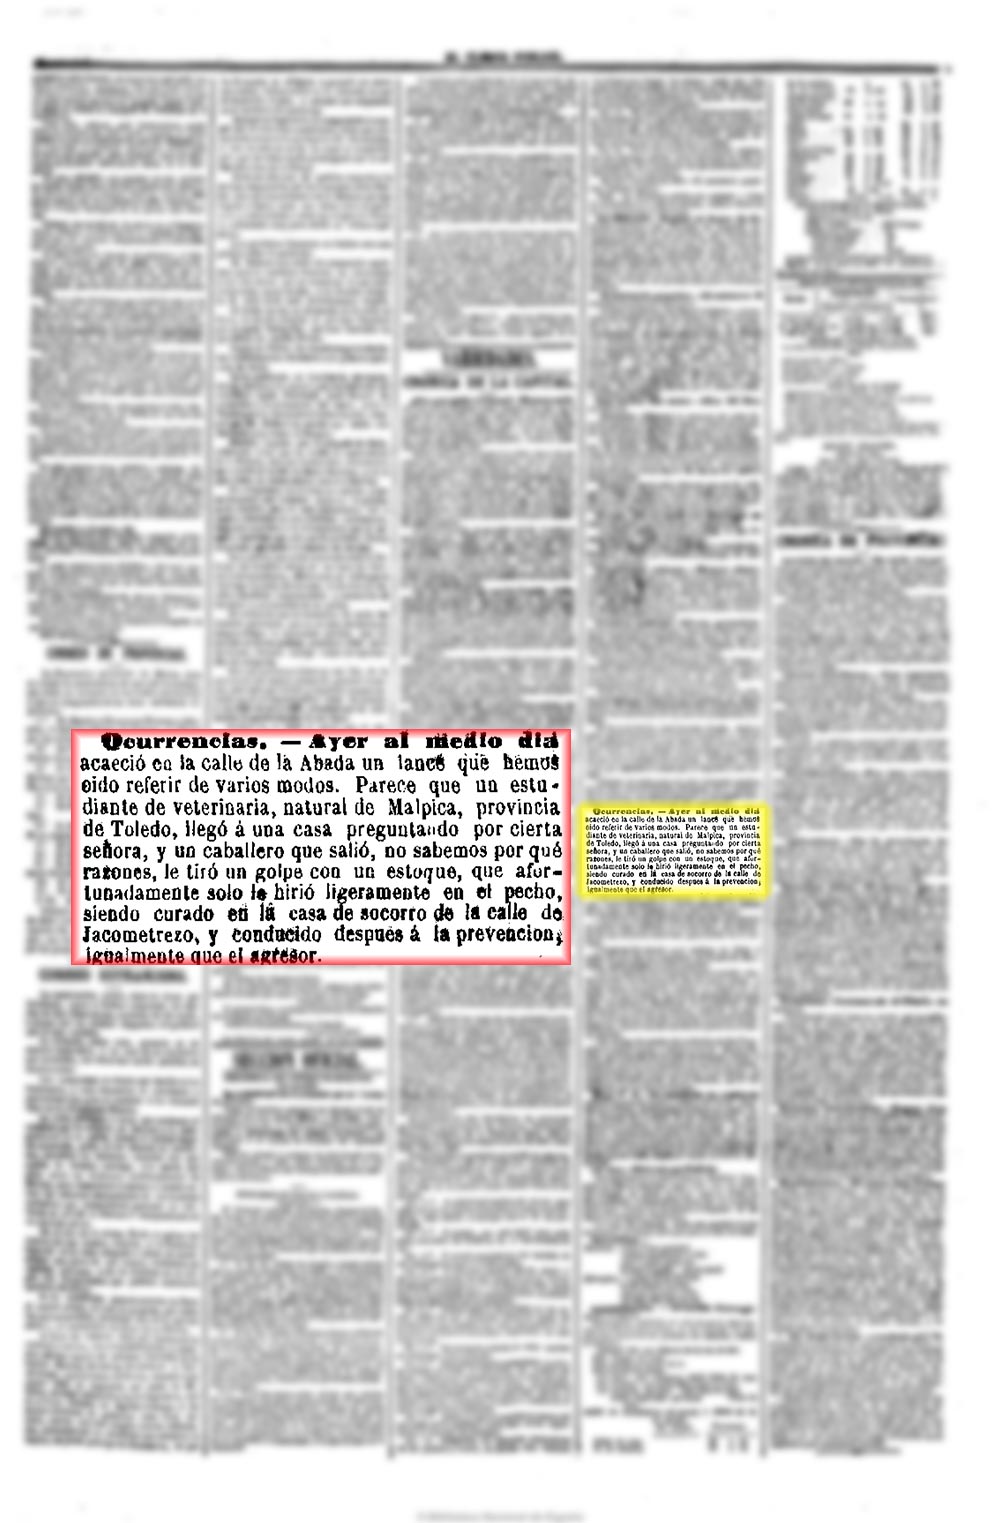 El Clamor público 11/4/1863, página 3. Malpiqueño herido en Madrid